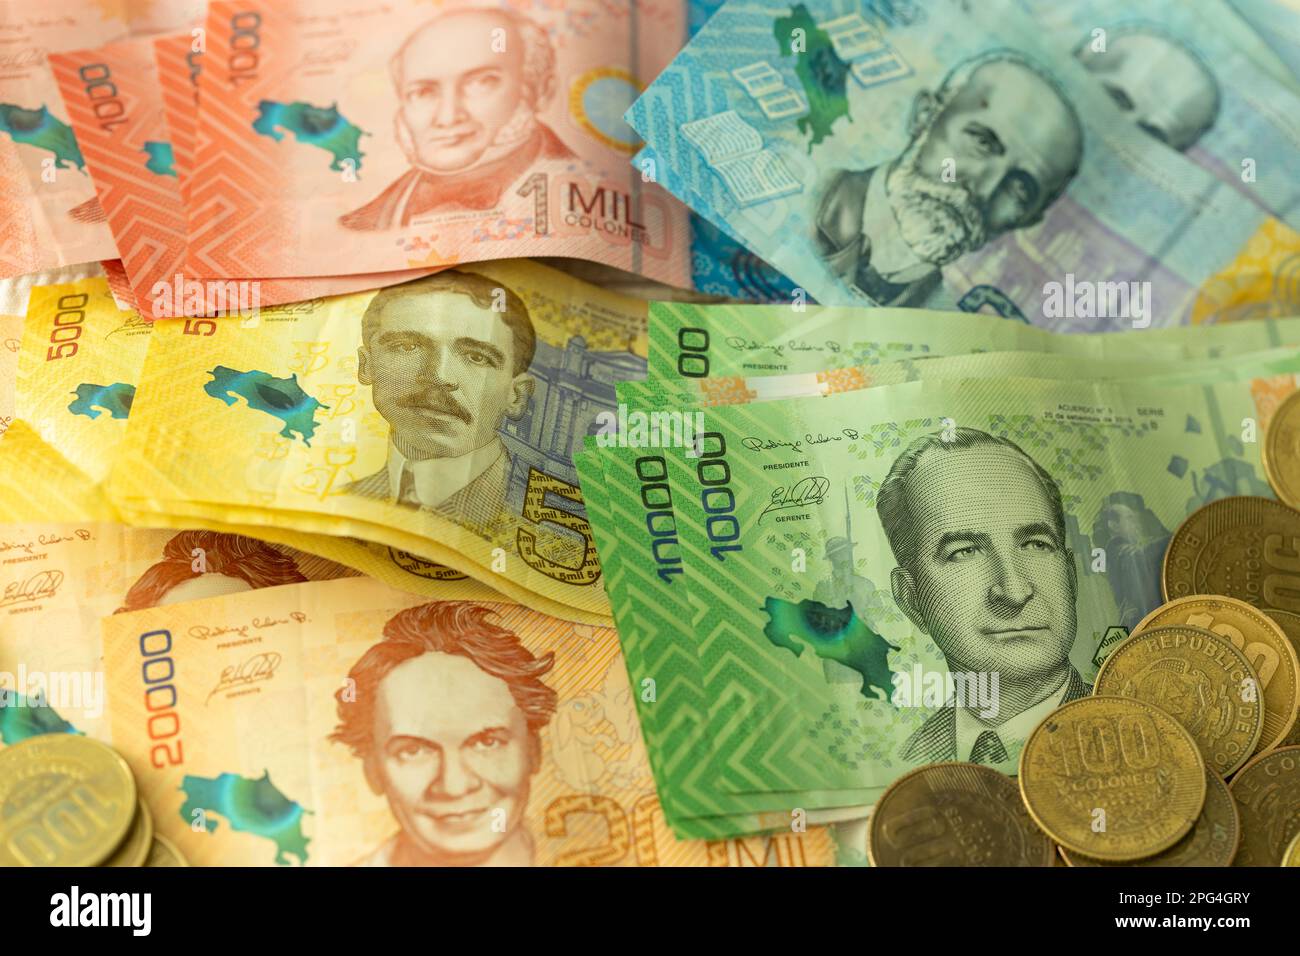 Denaro del Costa Rica, un sacco di banconote e monete, tutti i valori, moneta del Costa Rica due punti, business Financial background, primo piano Foto Stock